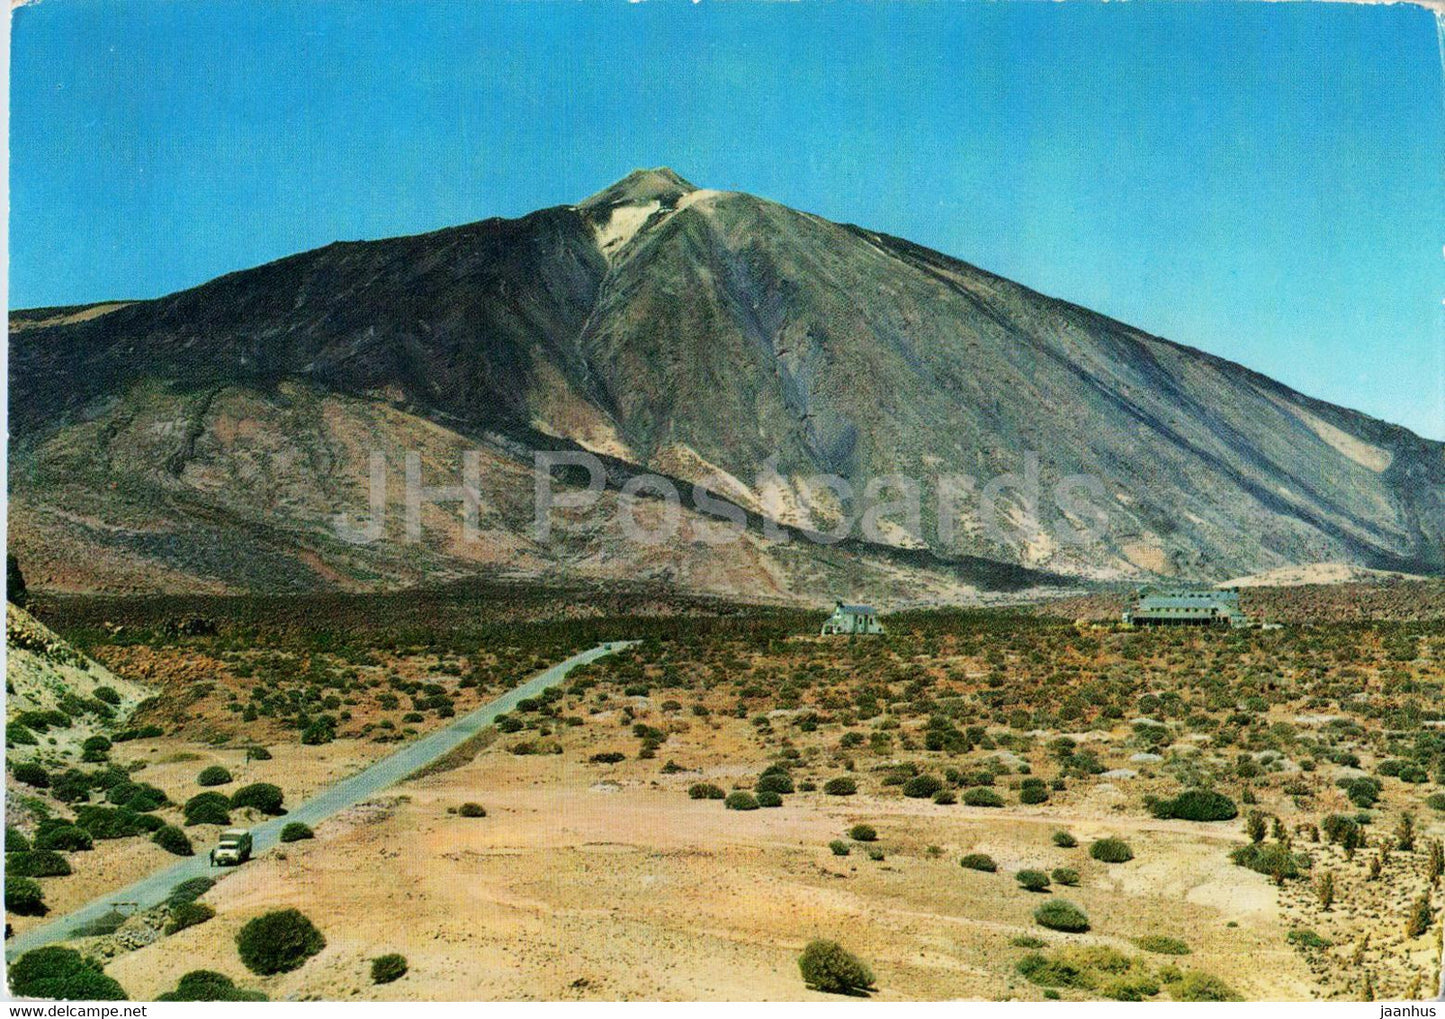 Las Canadas del Teide - El Parador de Turismo - Tenerife - Spain - unused - JH Postcards